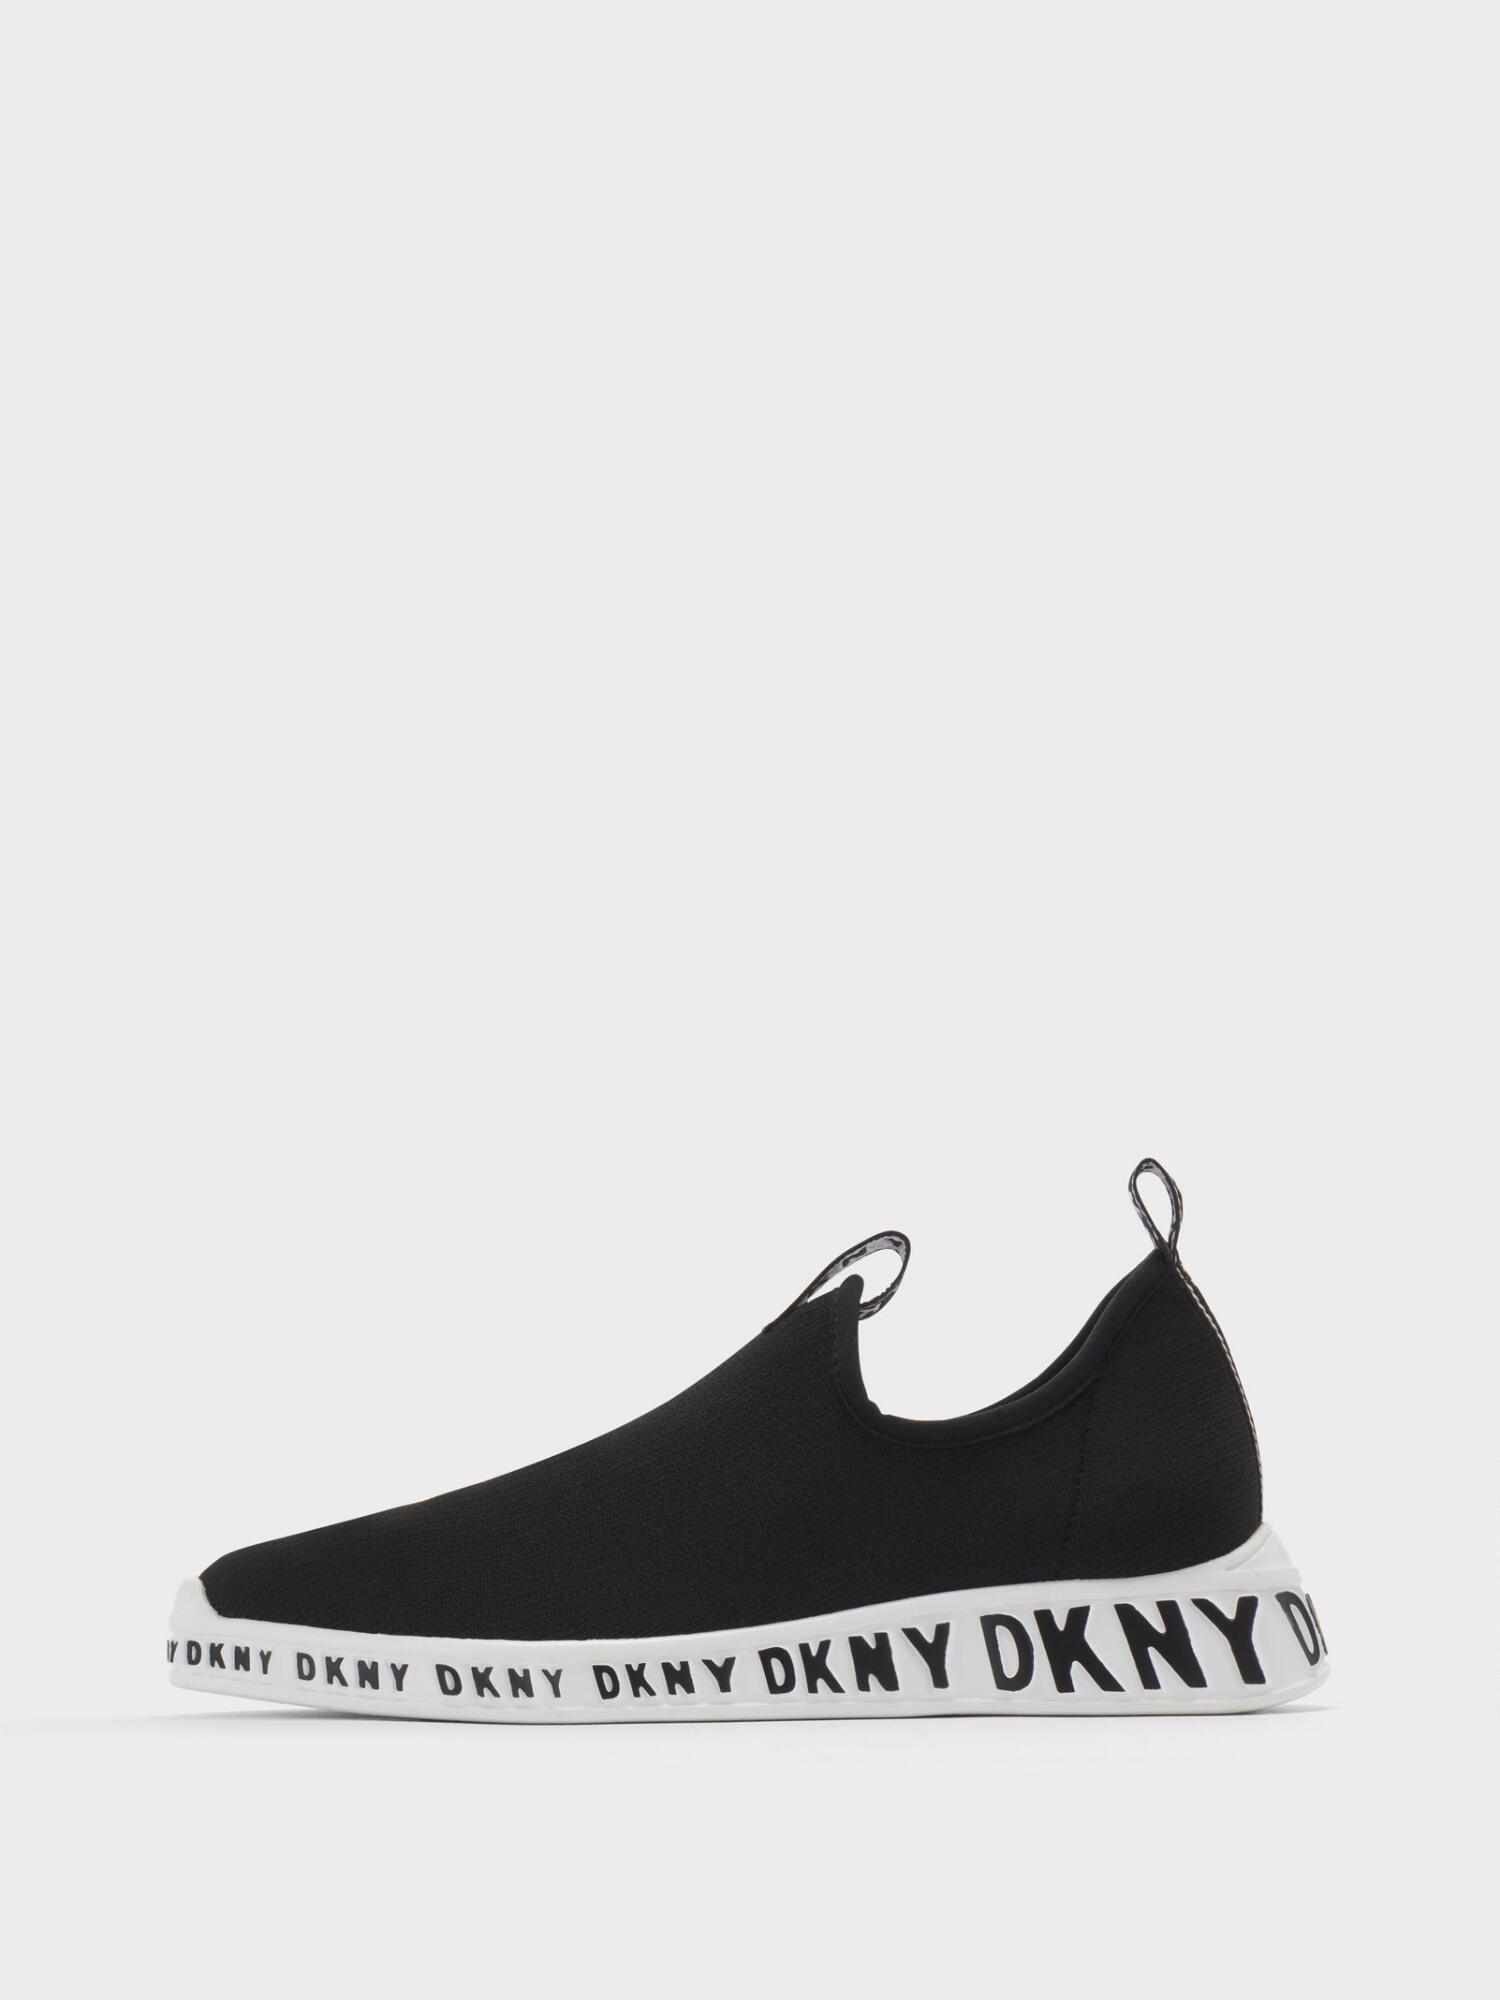 DKNY Mia Slip-on Sneaker in Black - Lyst